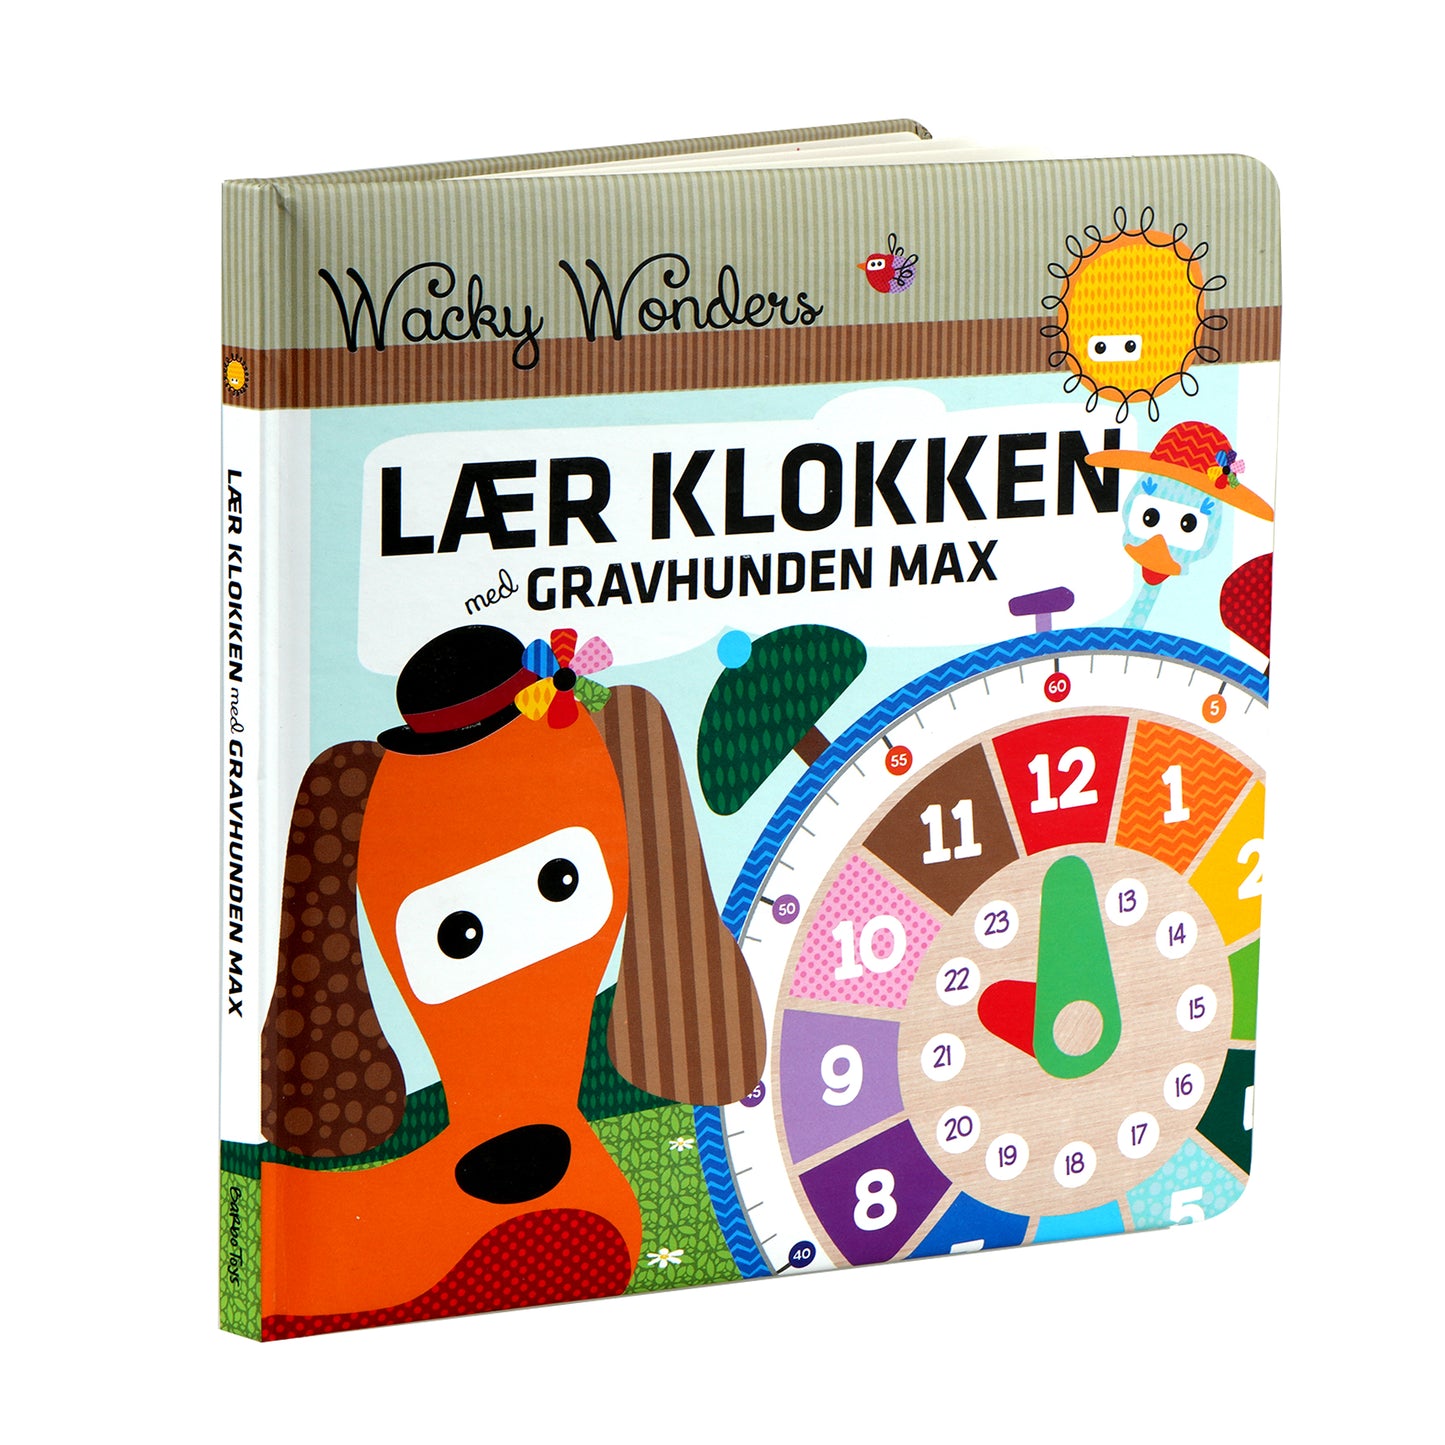 Wacky Wonders - Lær Klokken - DK